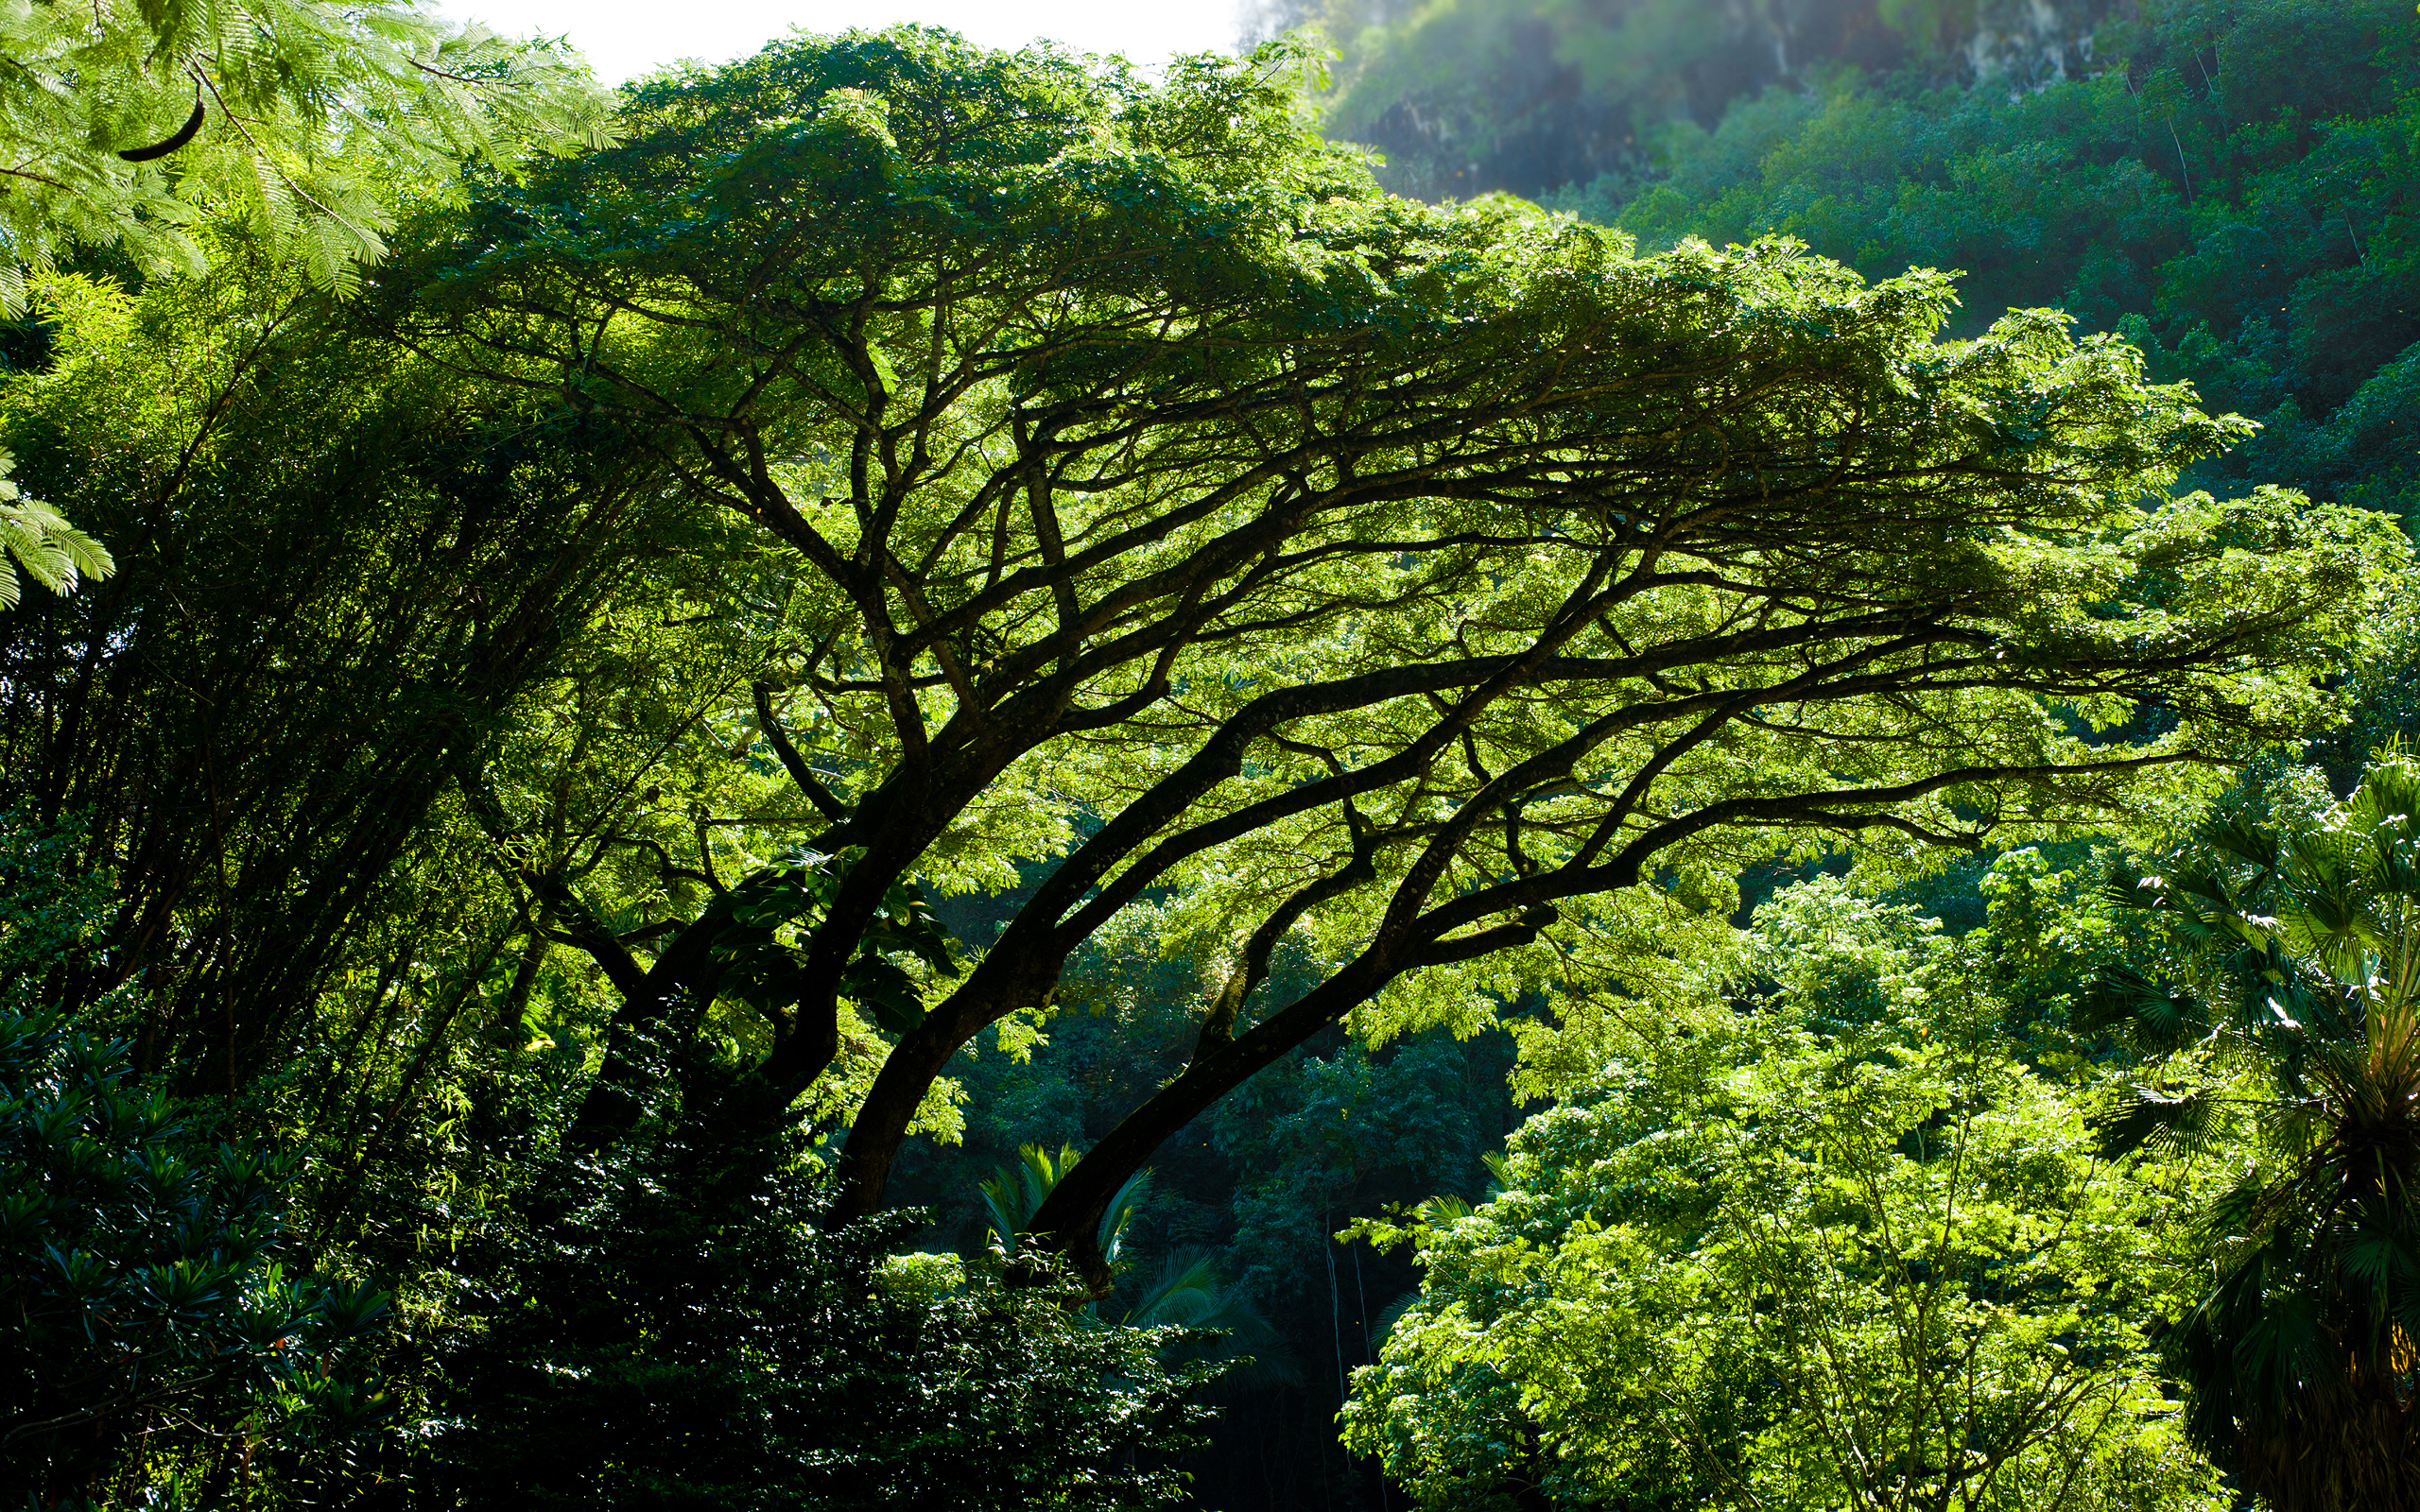 Скачать обои бесплатно Лес, Дерево, Зеленый, Земля/природа картинка на рабочий стол ПК